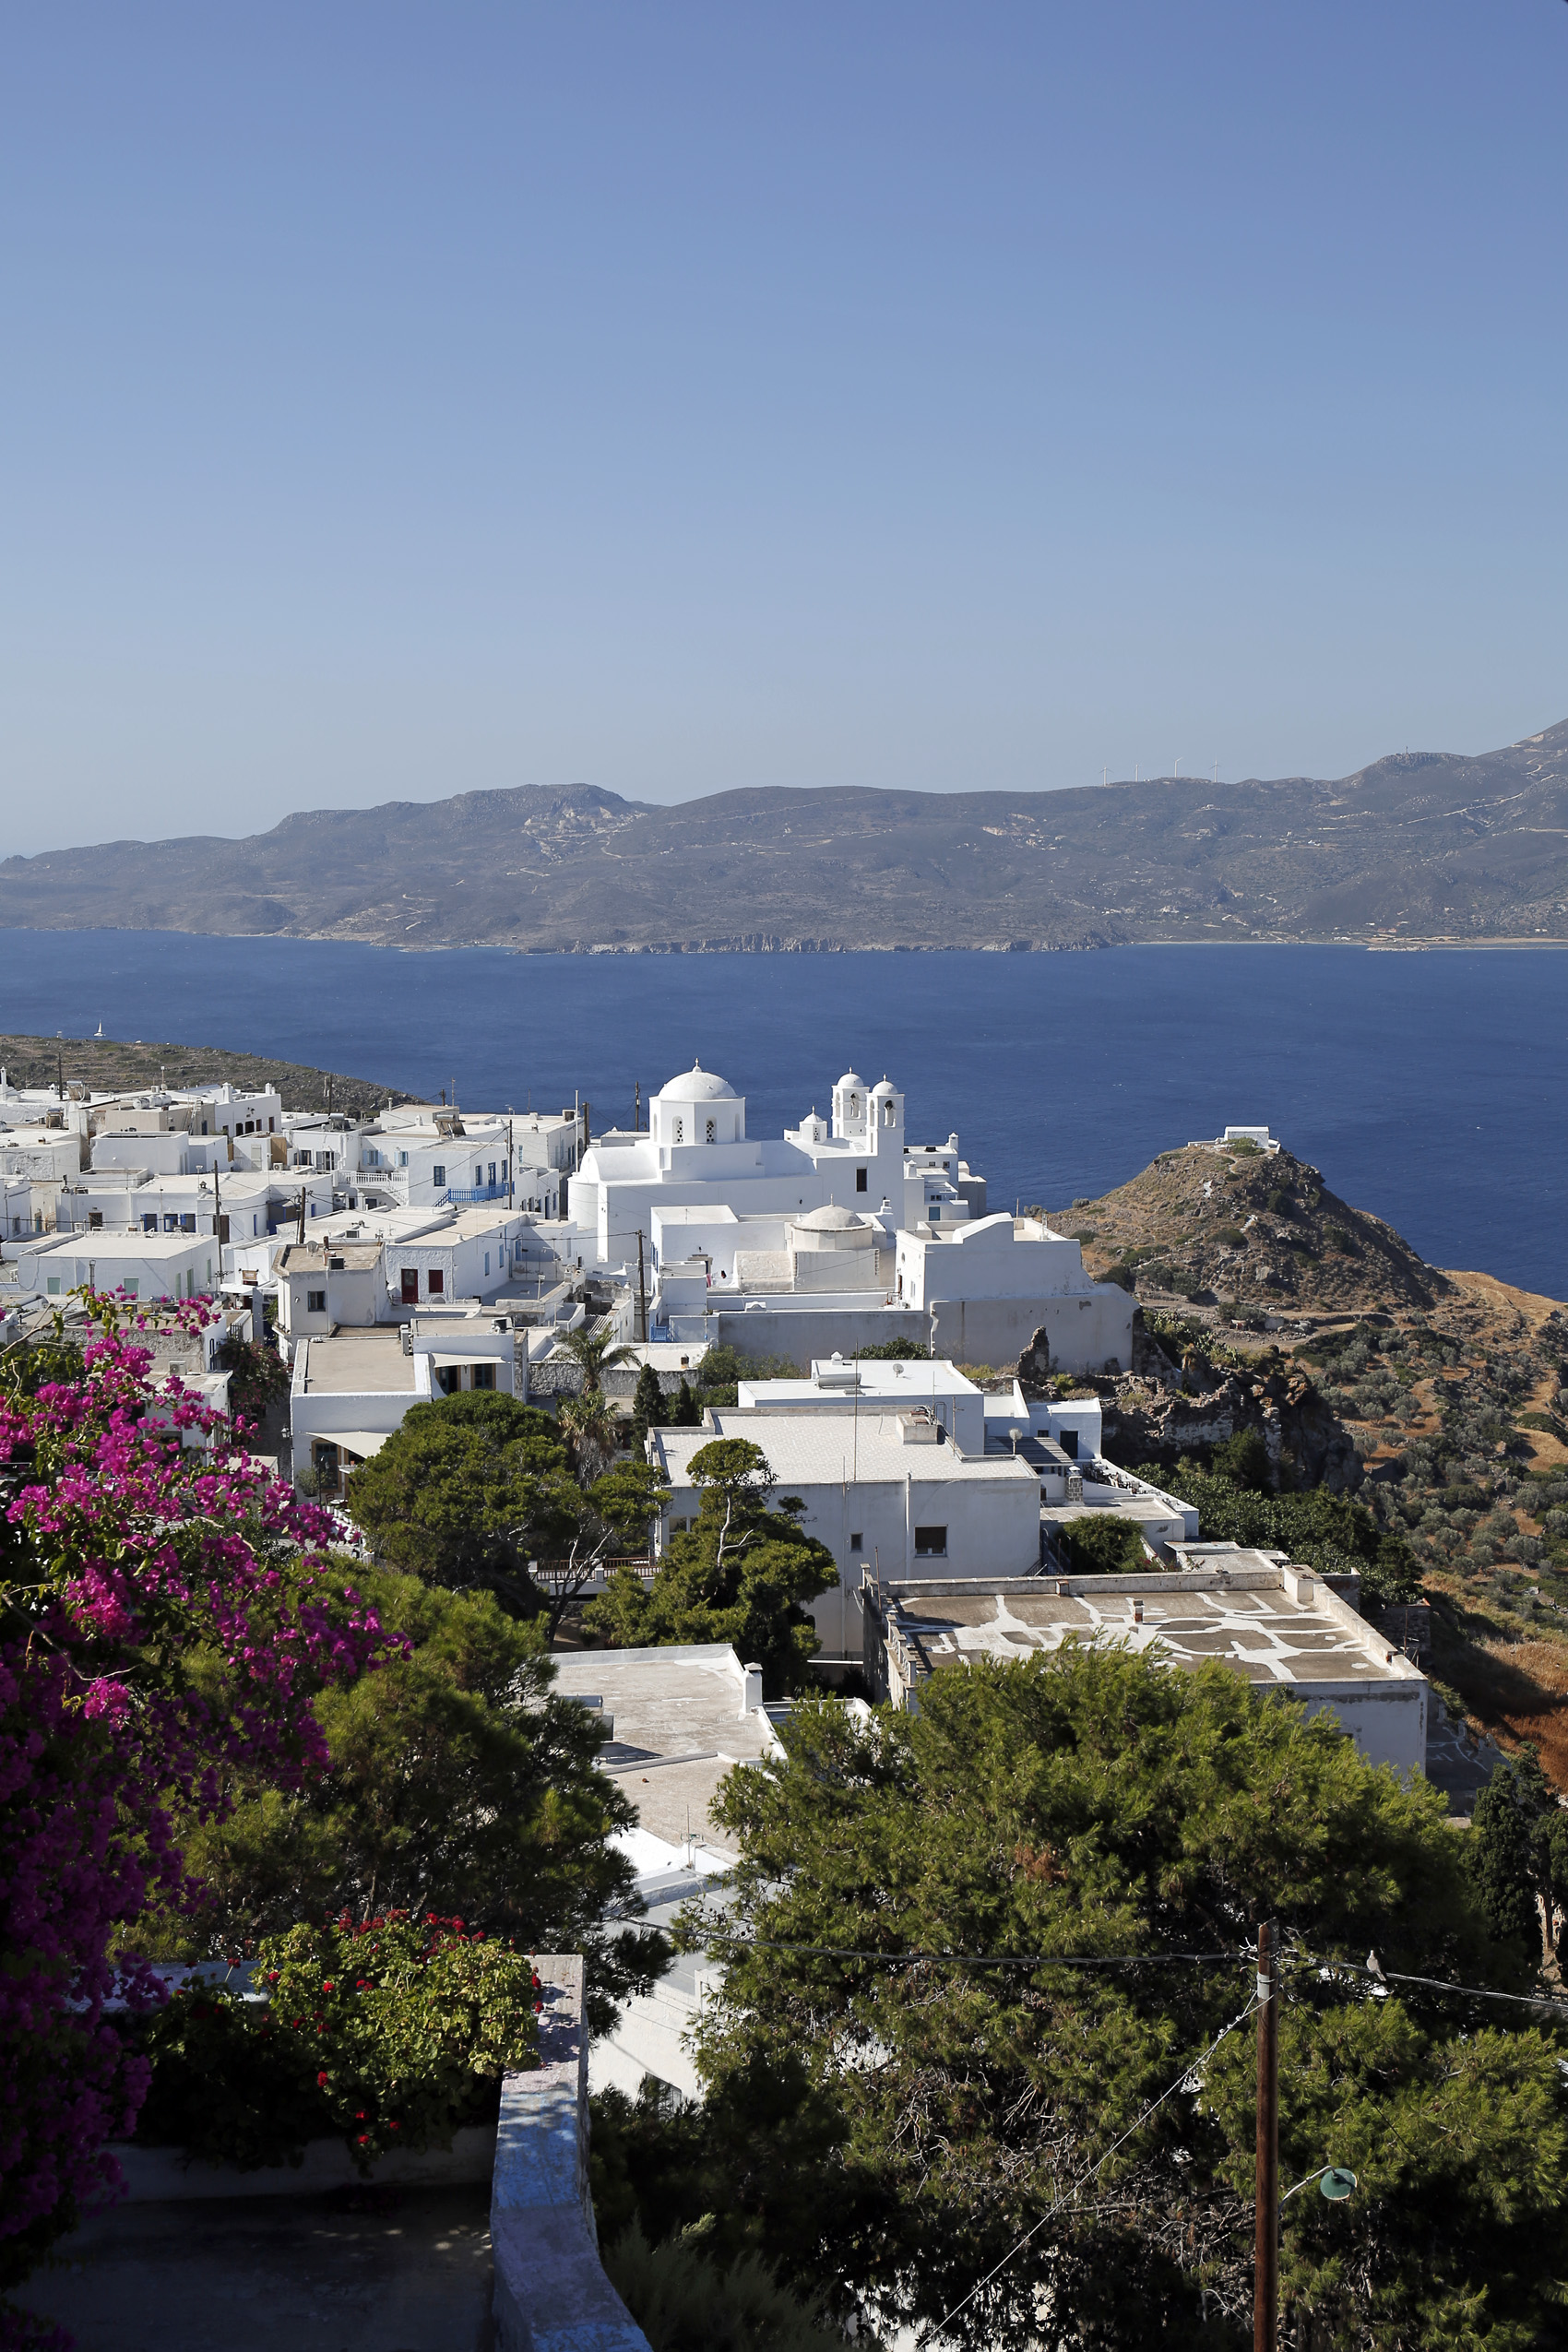 Το απόλυτο success story για τον ελληνικό τουρισμό με ταξιδιωτικές εισπράξεις πάνω από 20 δισ. ευρώ